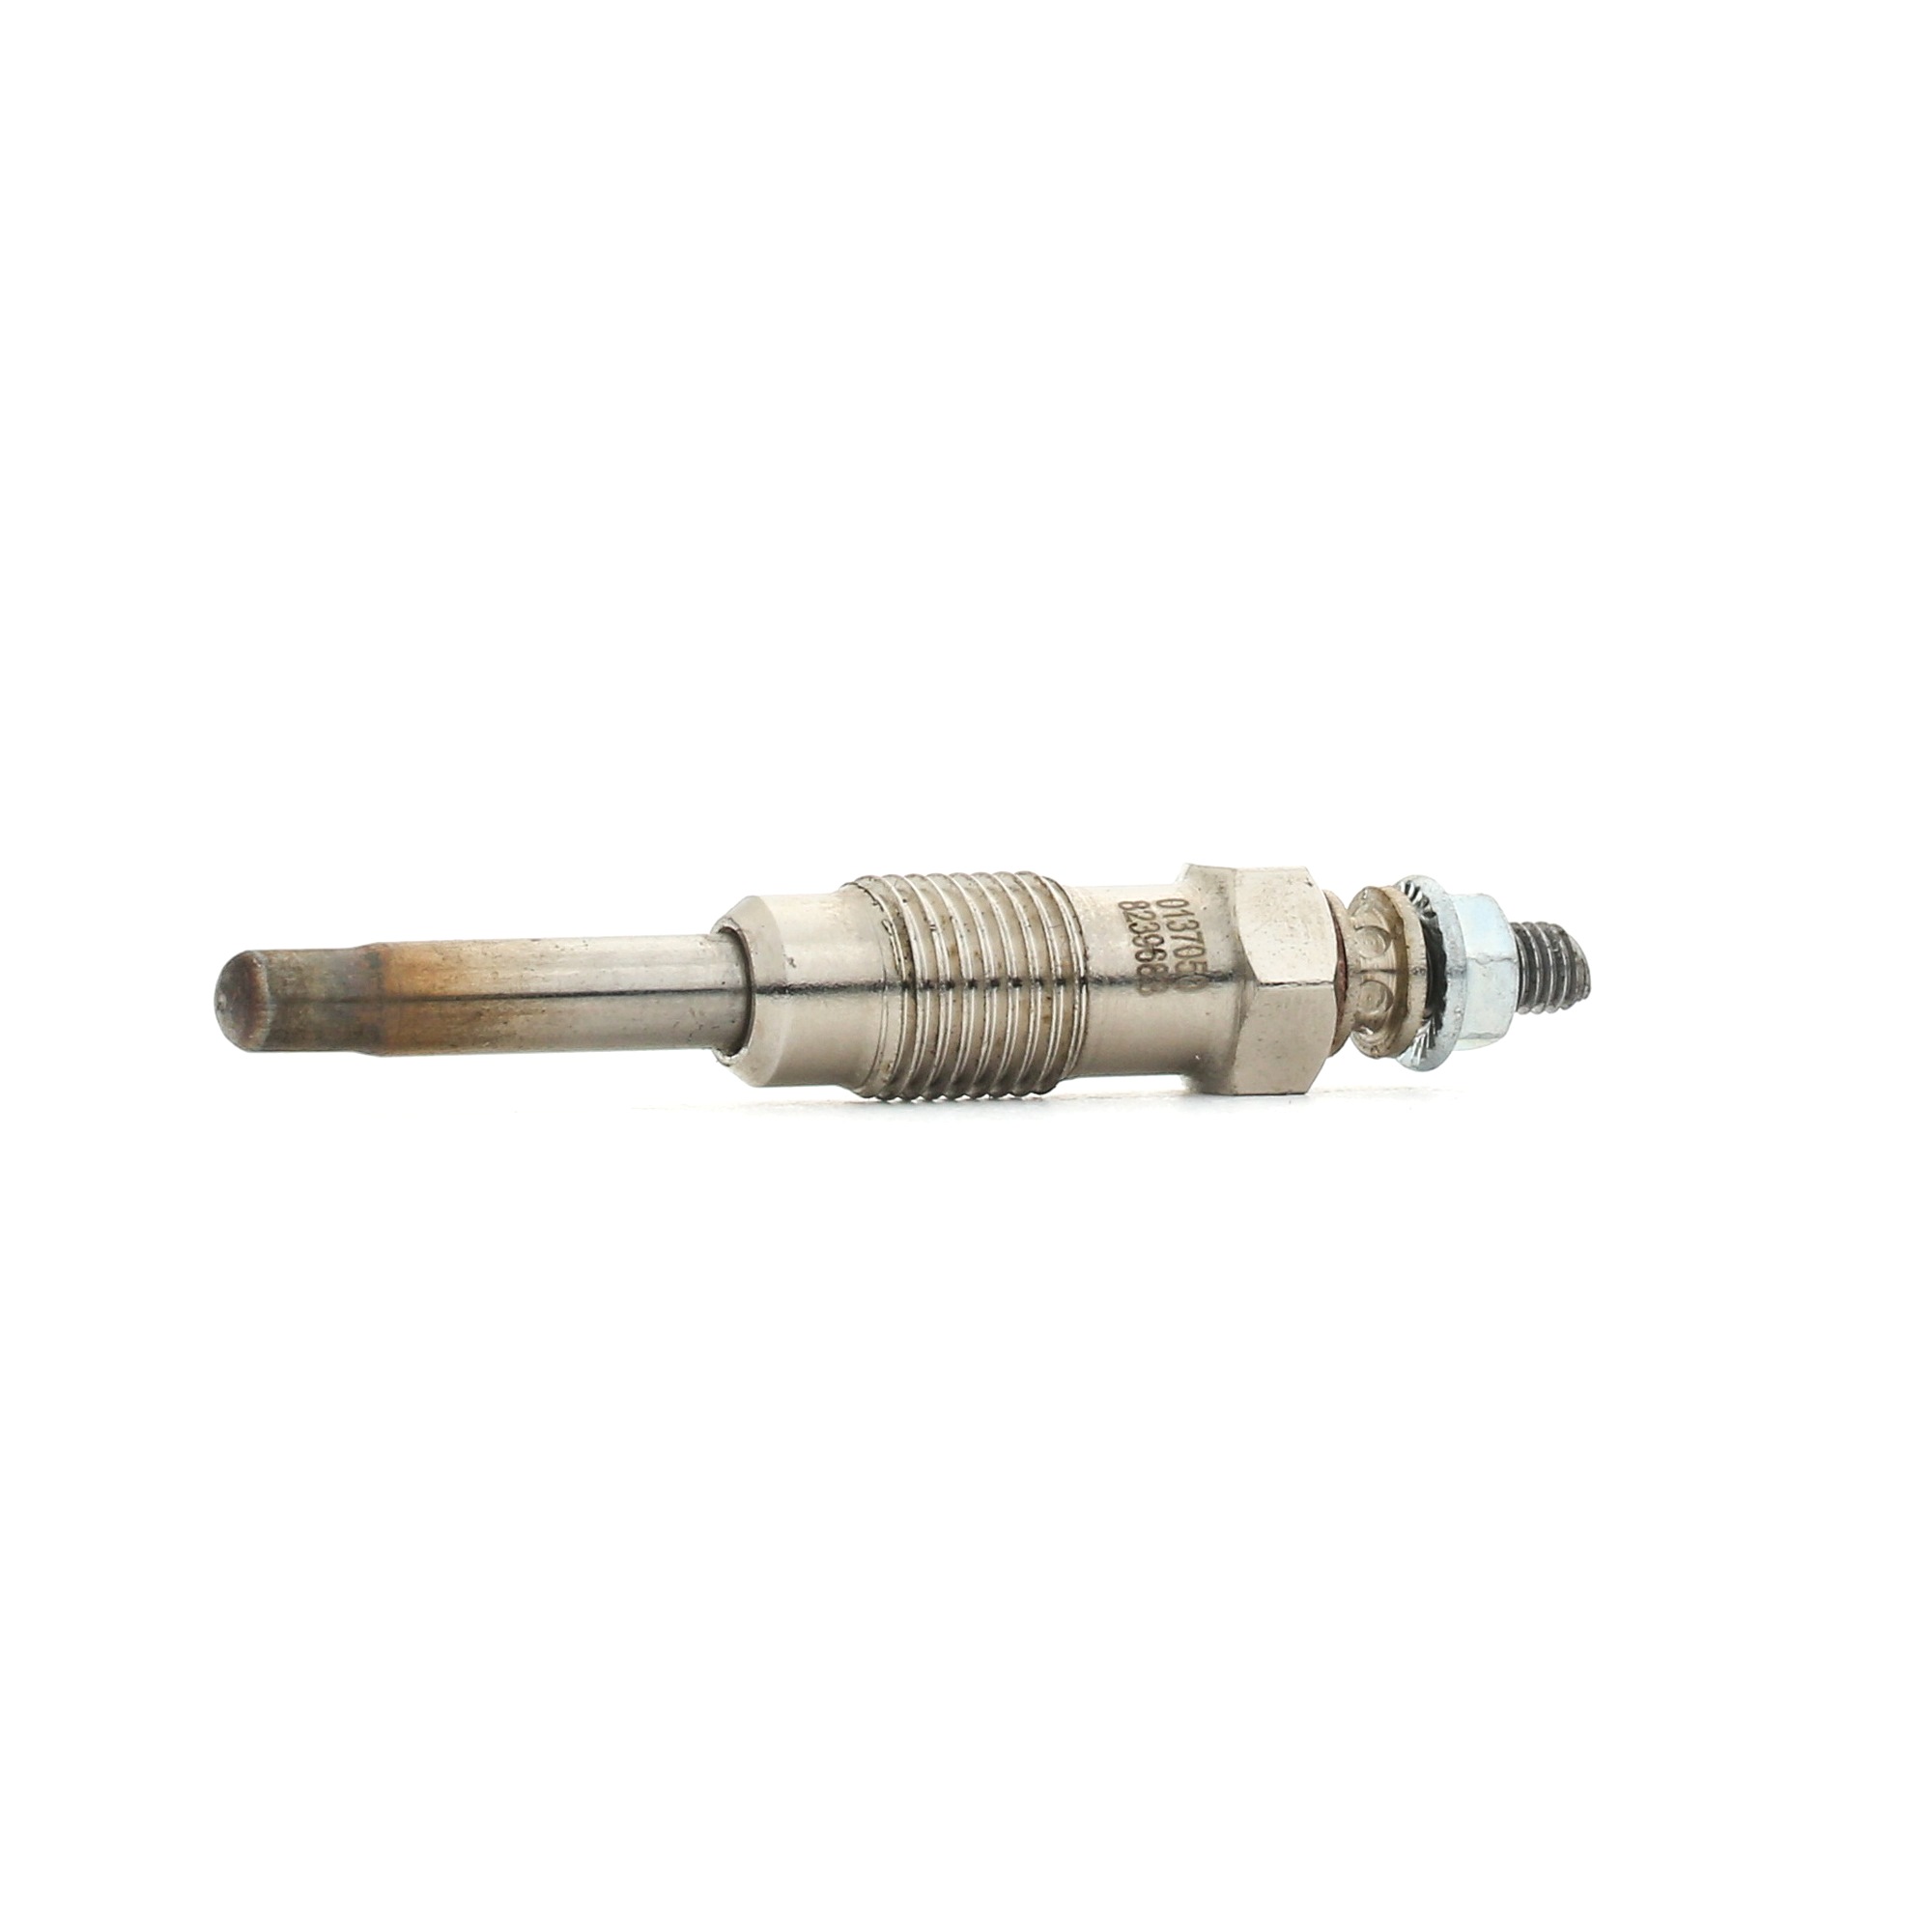 STARK SKGP-1890158 Glow plug 11V M12X1,25, Pencil-type Glow Plug, 76 mm